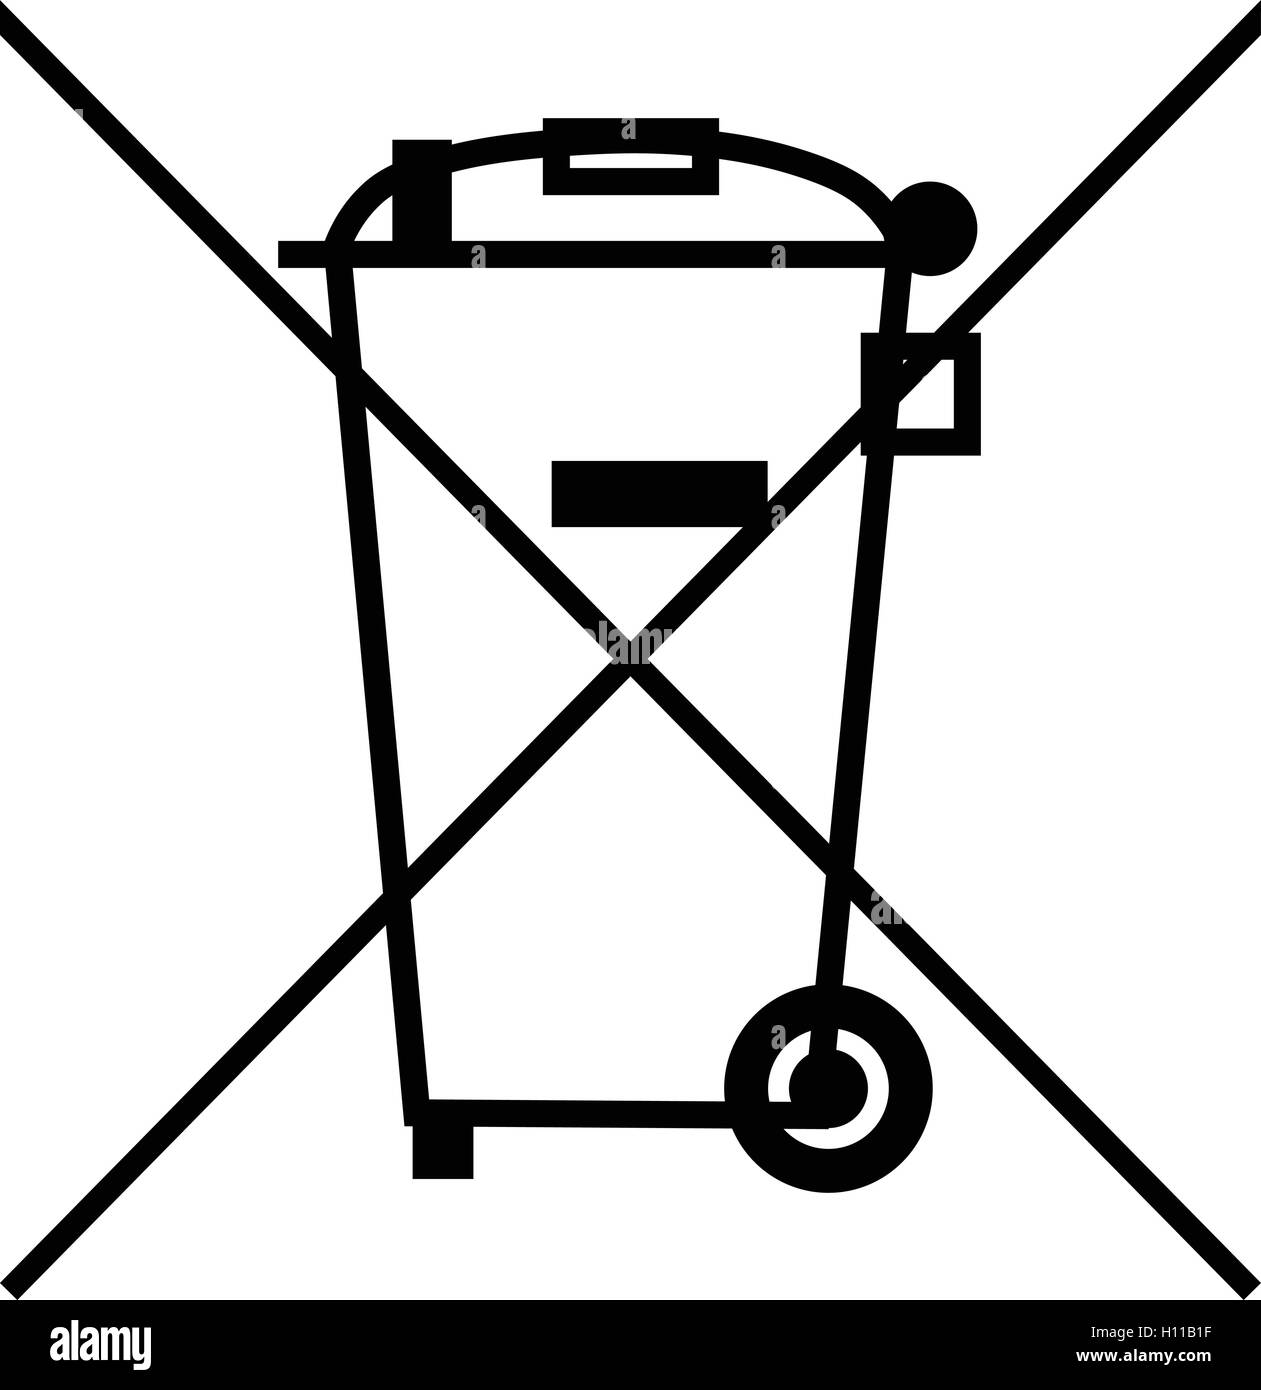 Logo de poubelle barrée Banque de photographies et d'images à haute  résolution - Alamy